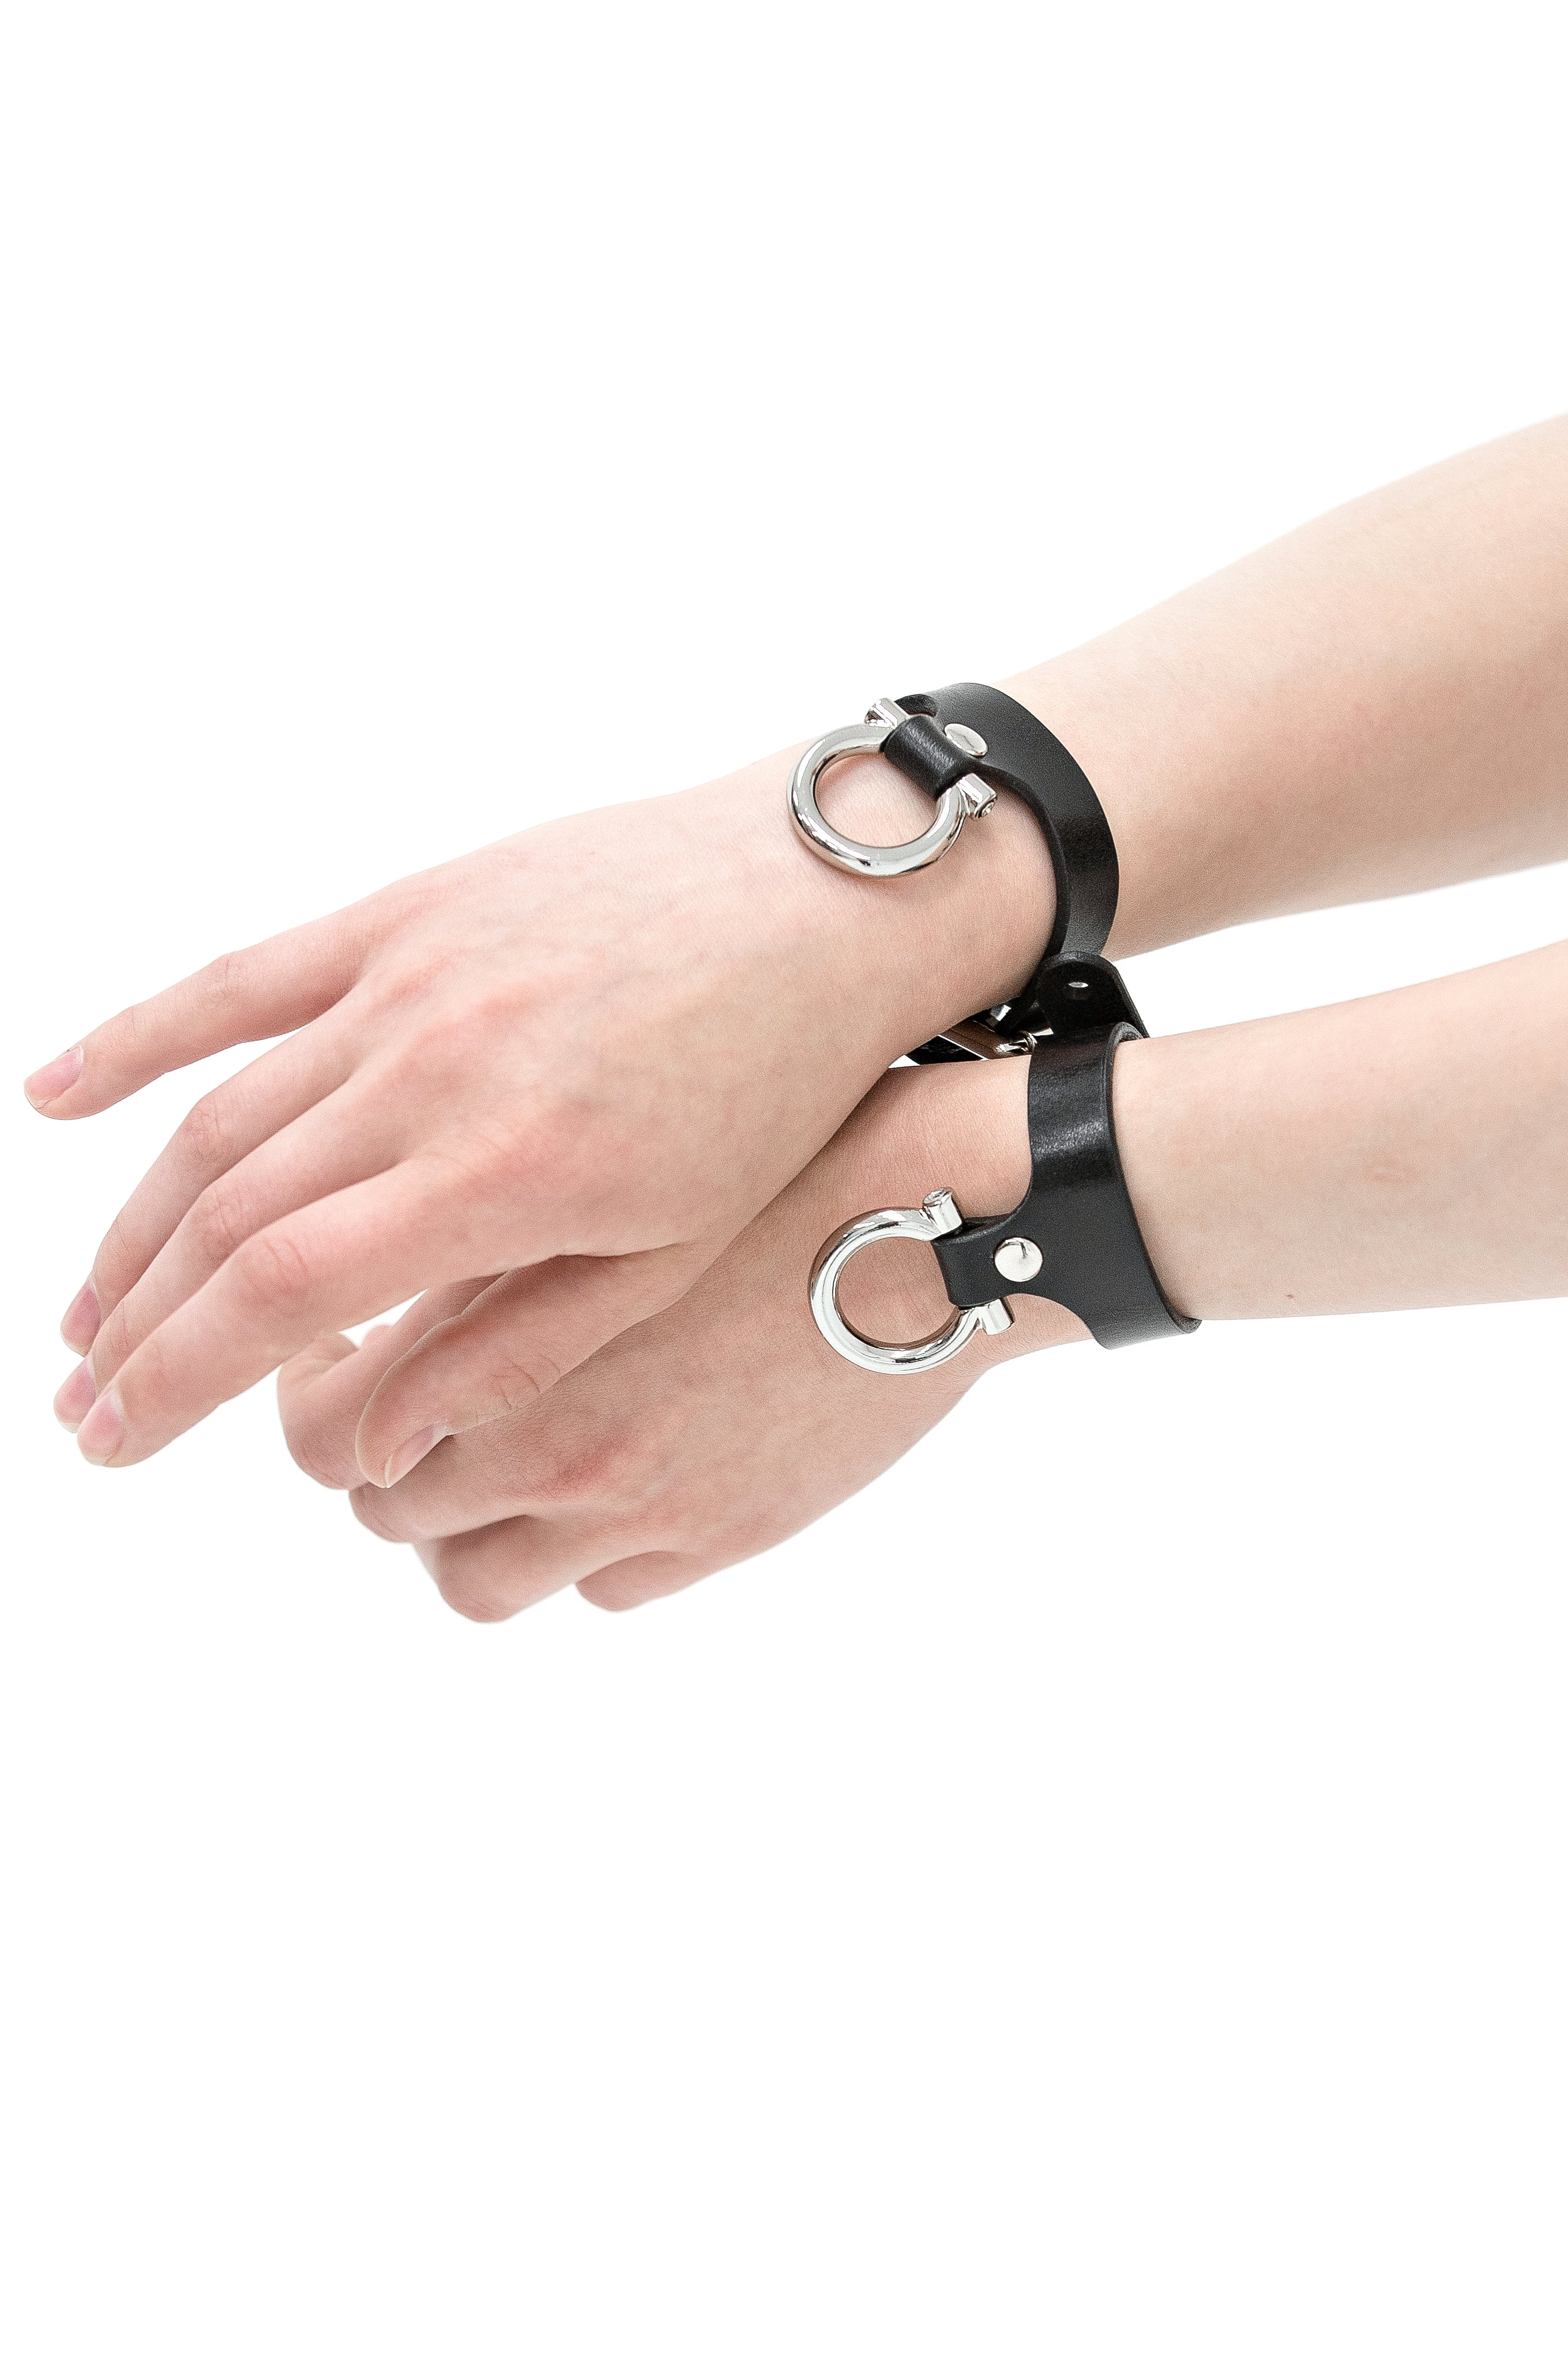 Wrist cuffs “Horseshoe”